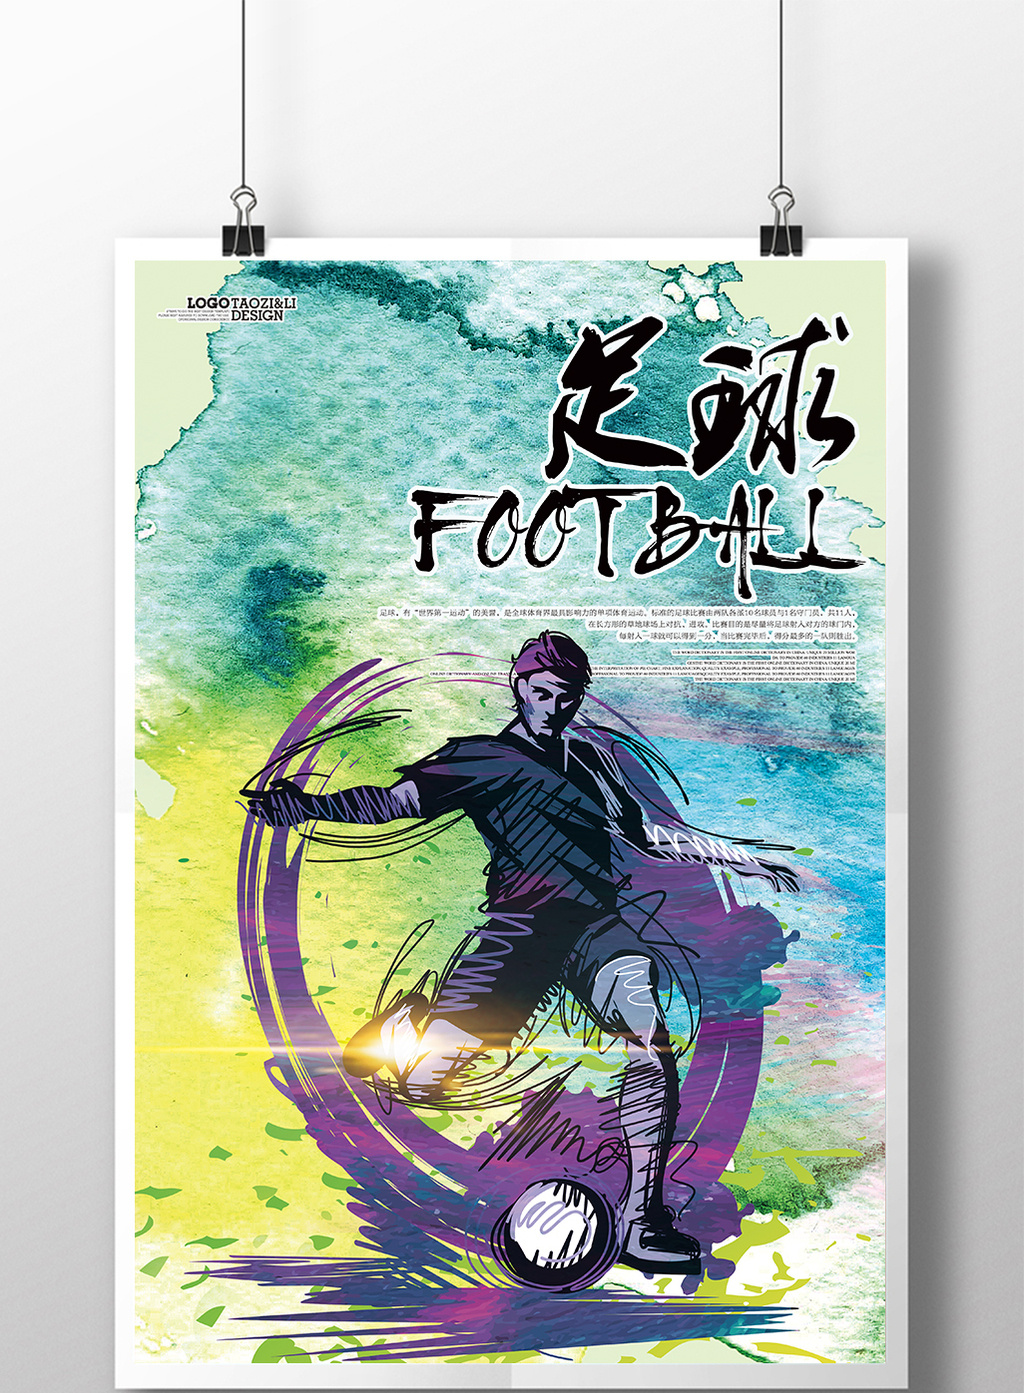 足球宣传海报展板dm单页